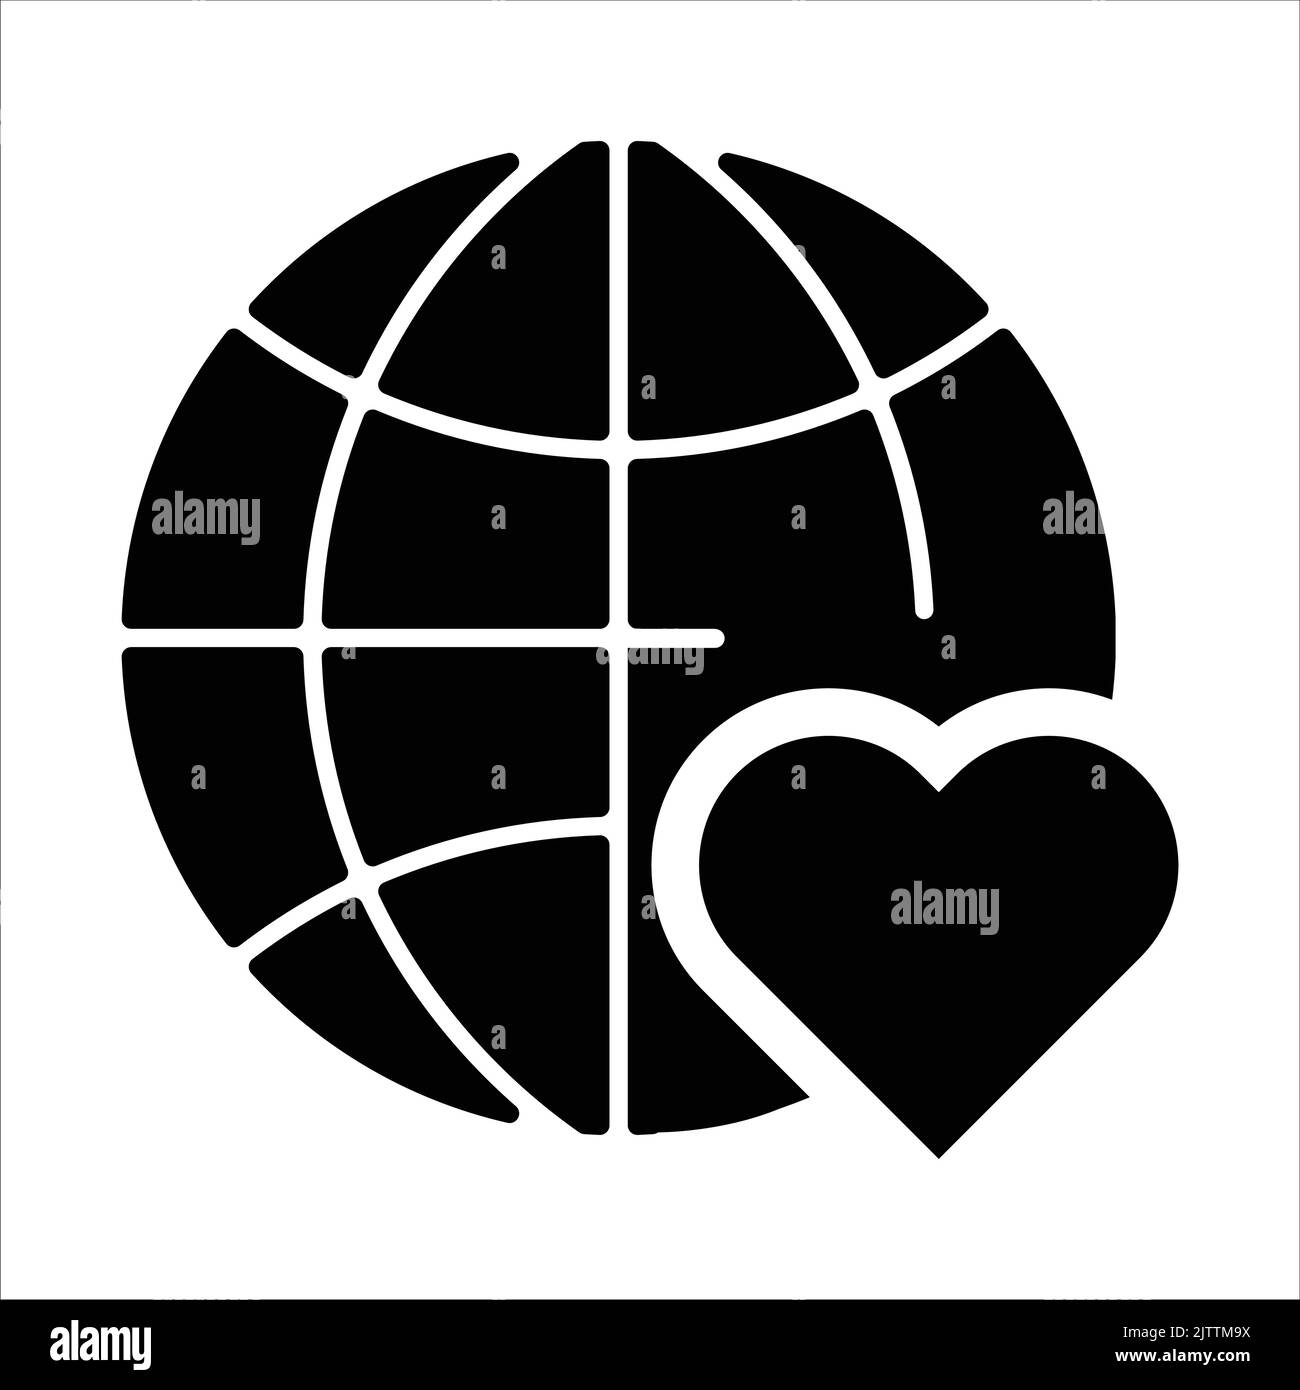 Globus und Herz Vektor-Symbol - Welt Wohltätigkeitsorganisation und Spende Tag Zeichen und Symbole Stock Vektor